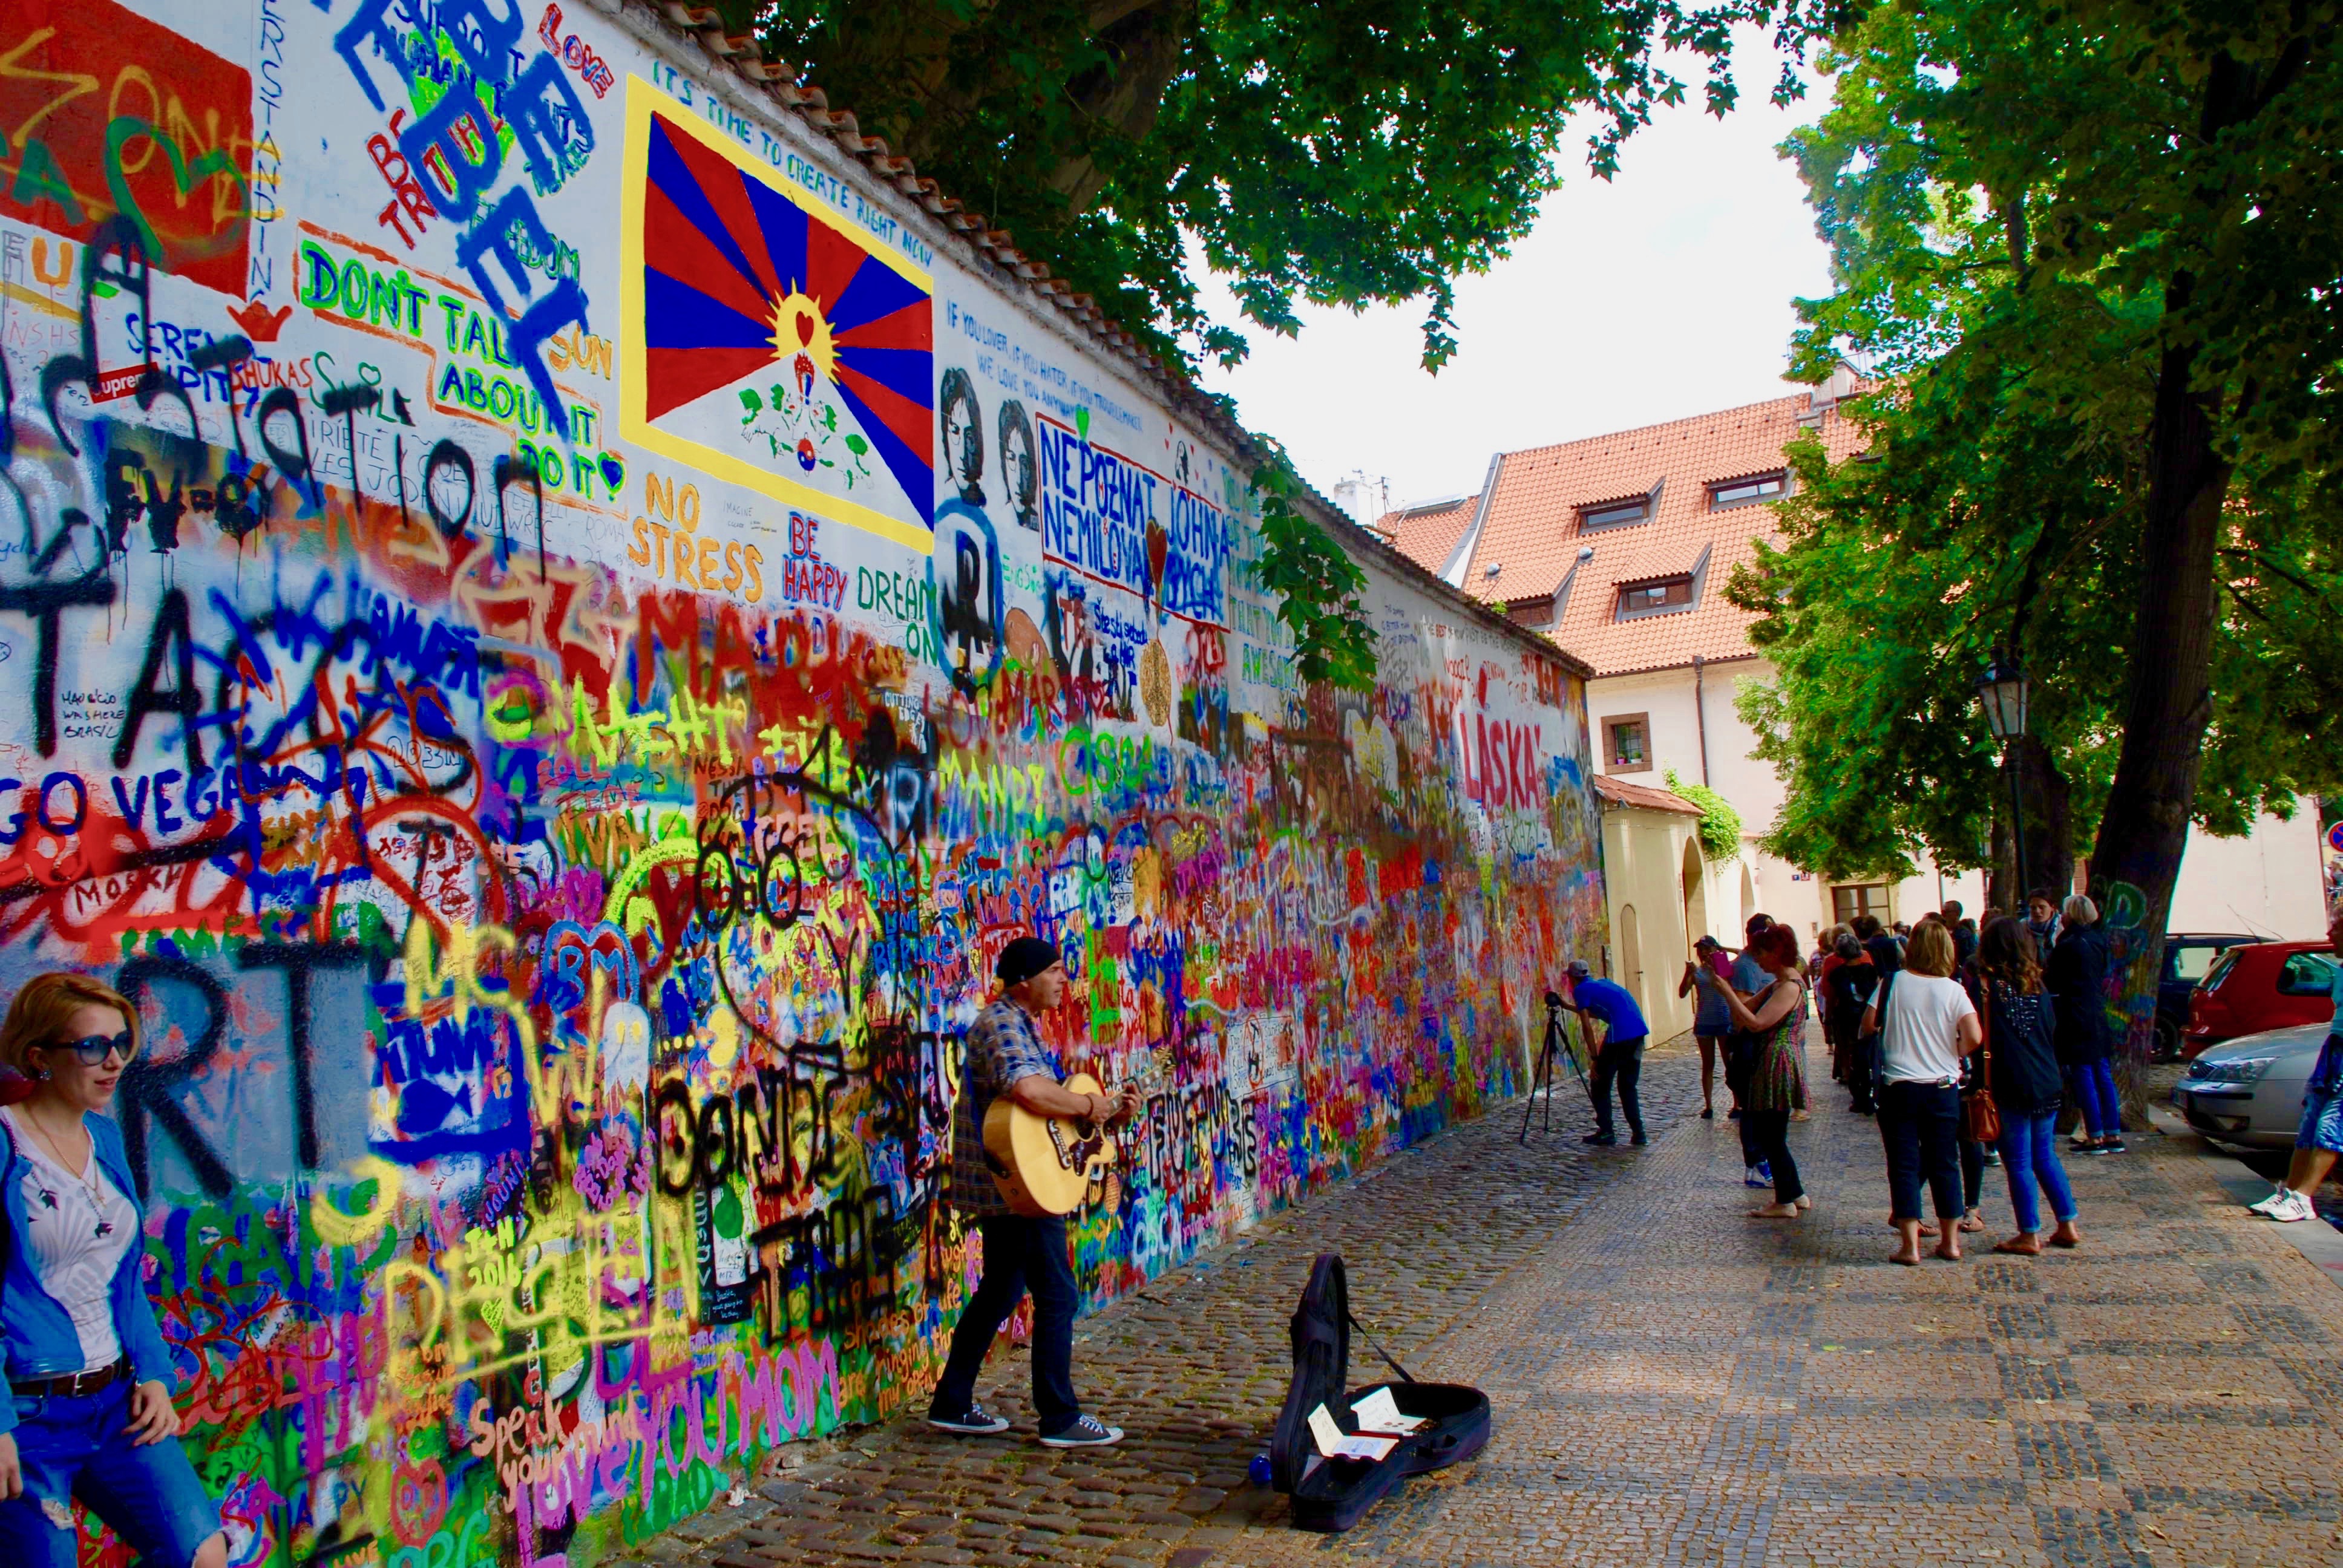 John Lennon Wall In Prague, Czech Republic